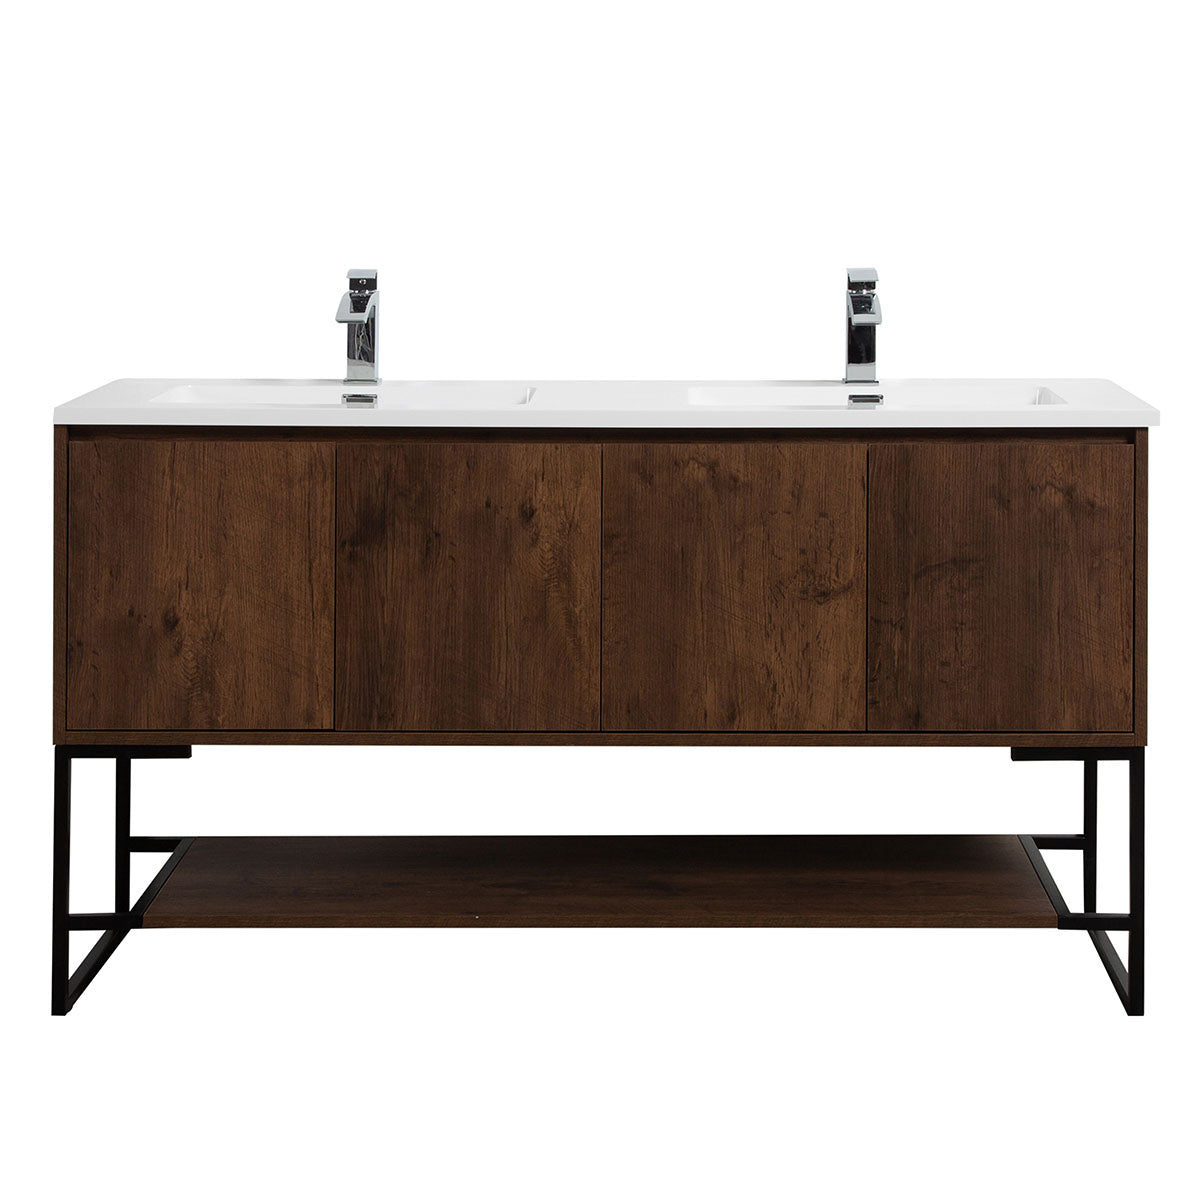 60" Allen Vanity & Resin Sink (Rose Wood) V9006 Series - iStyle Bath